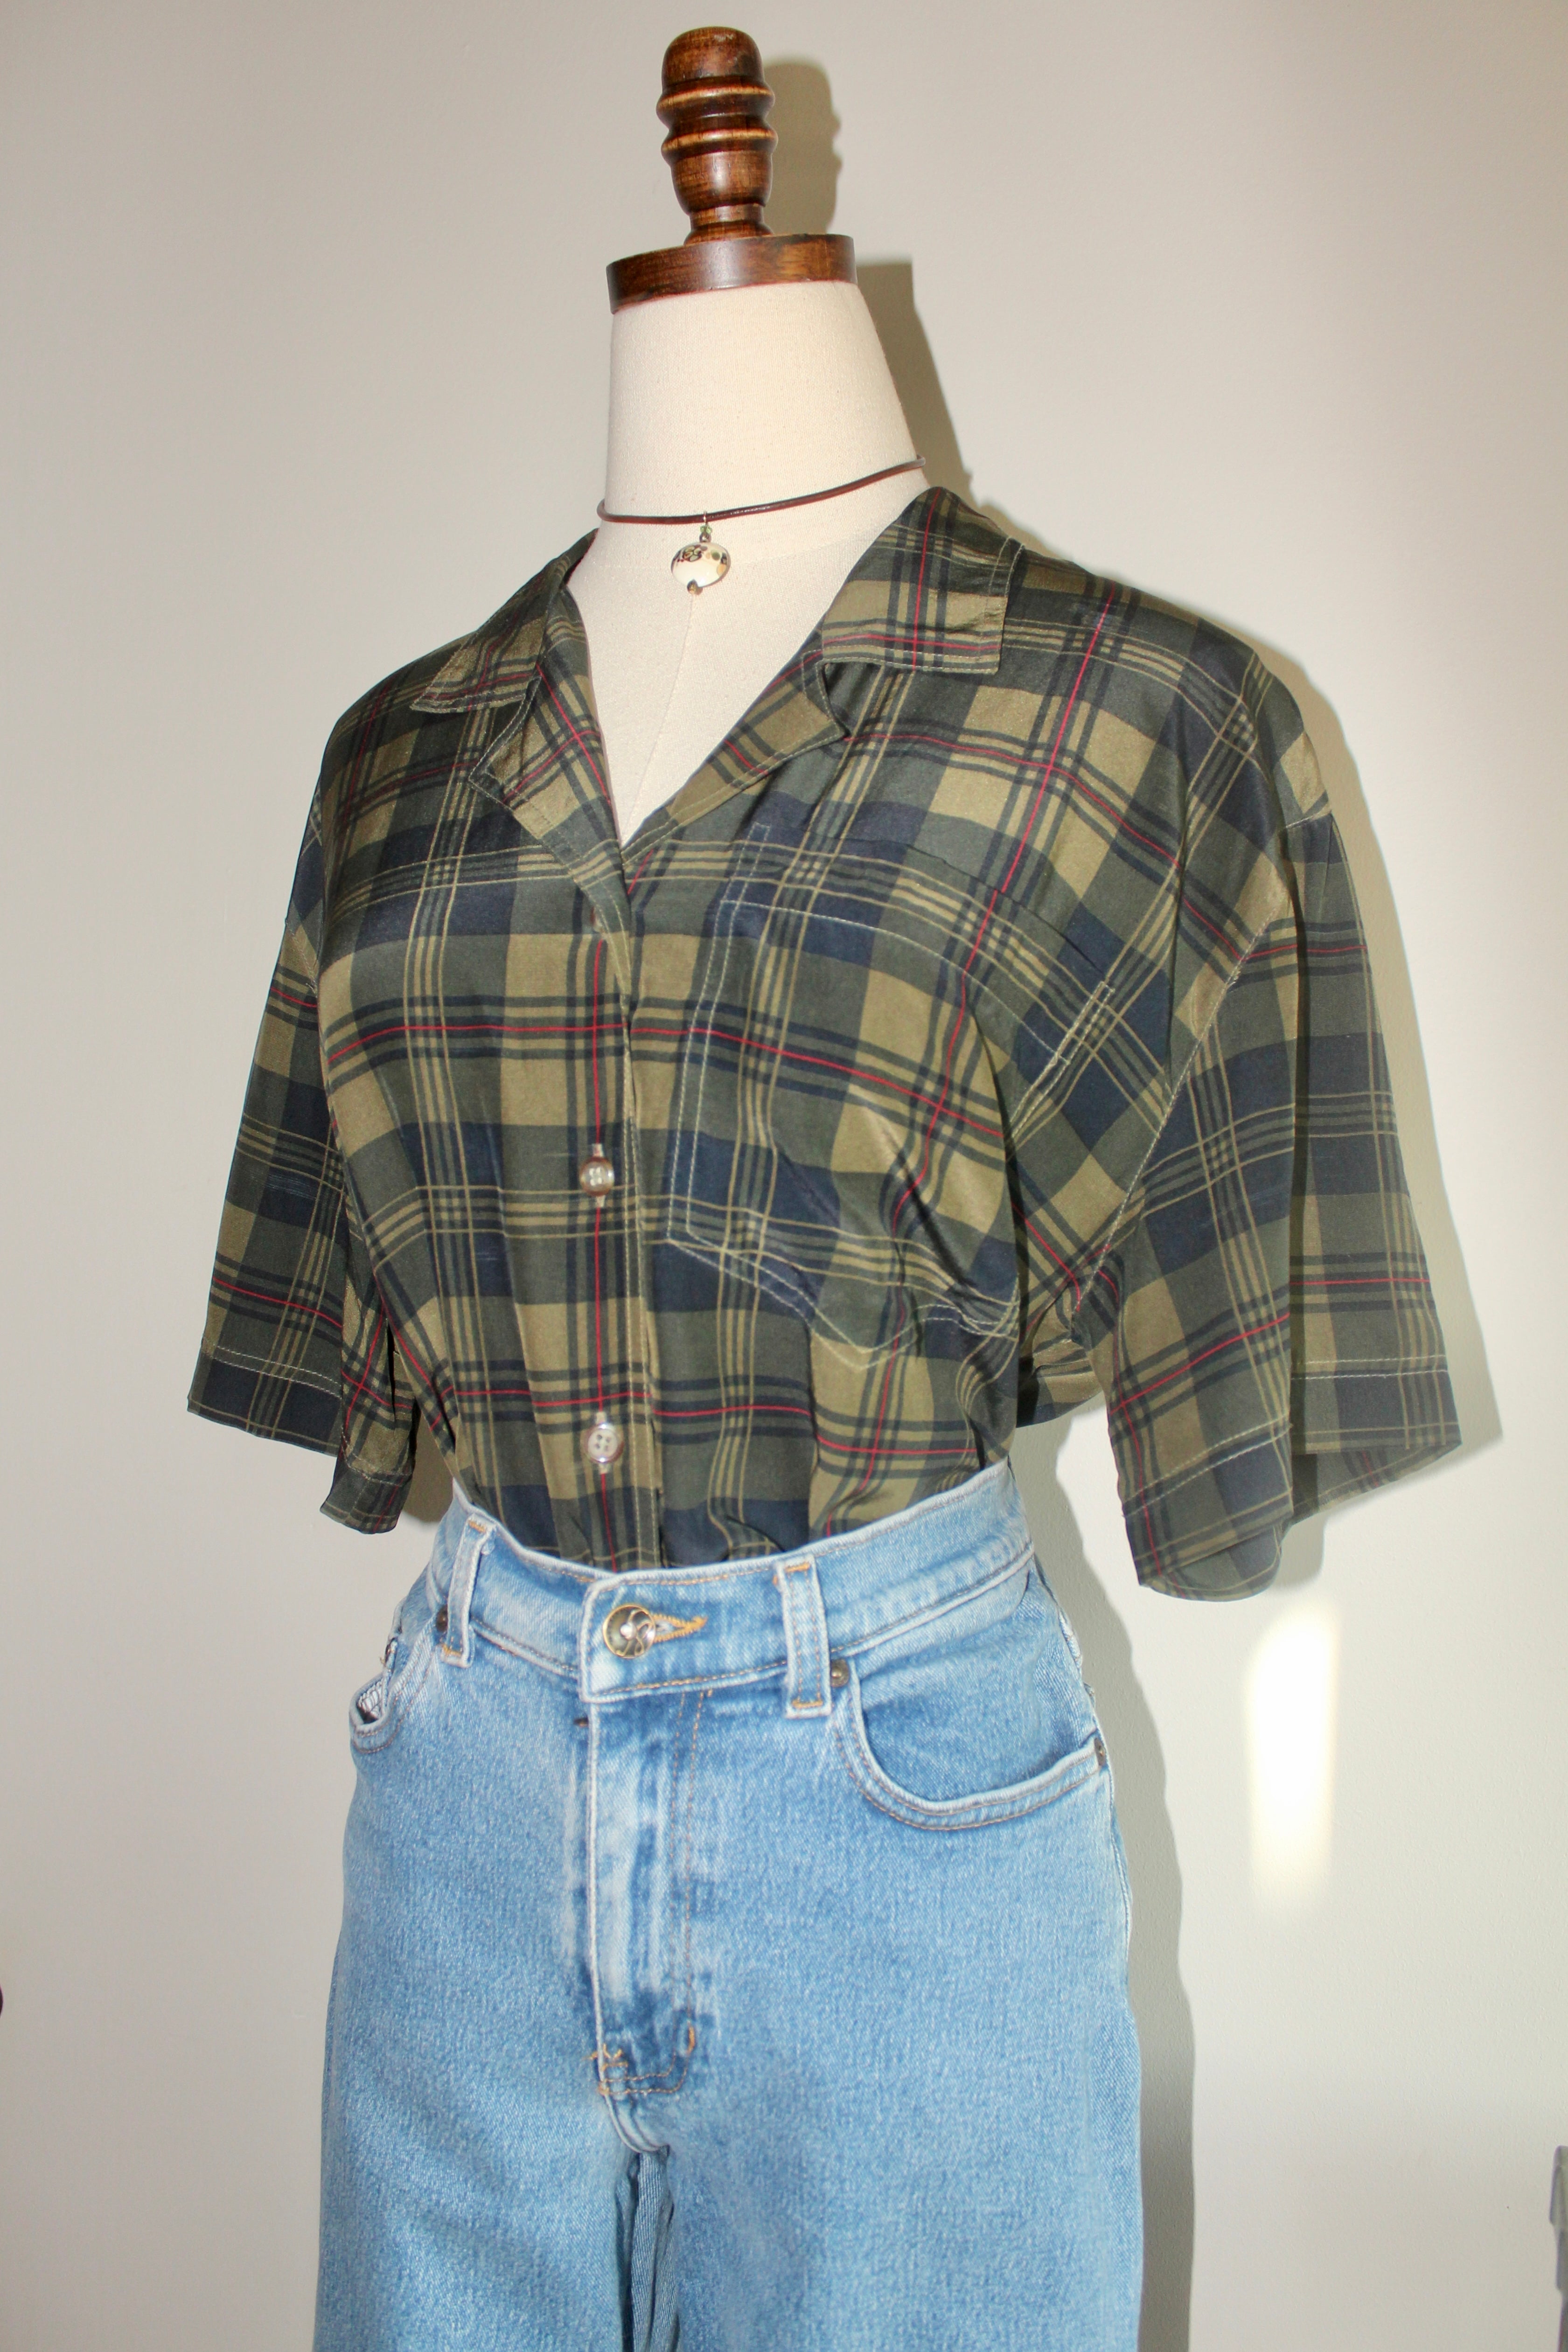 Vintage 90s Plaid Silk Short Sleeve (M)